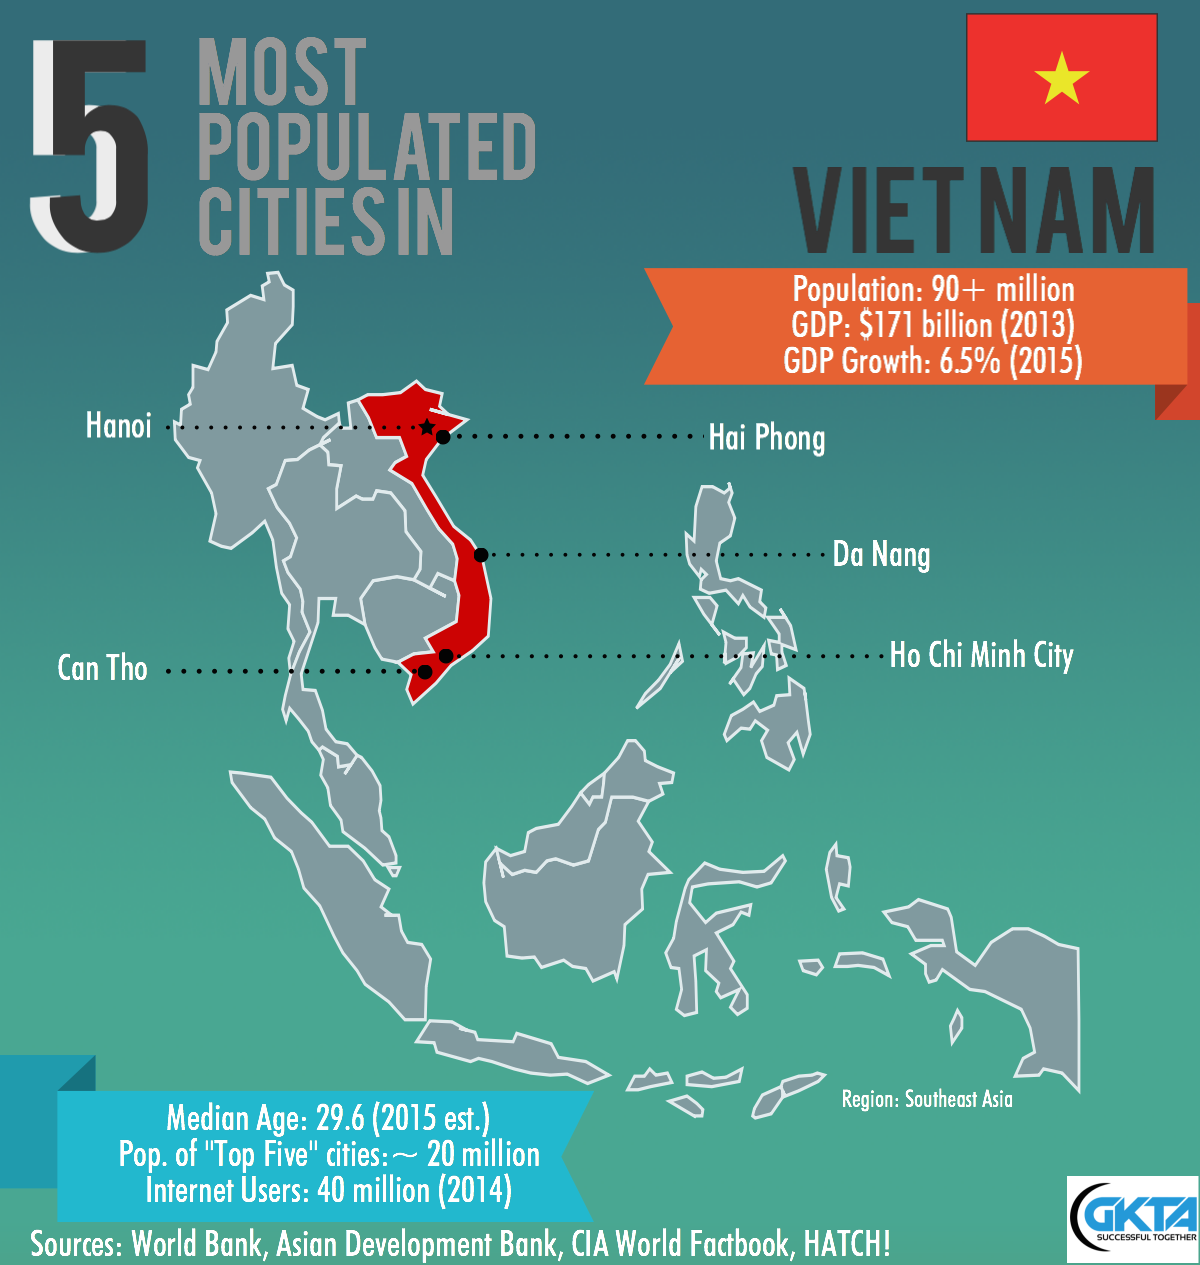 Top Five Most Populated Cities in Vietnam